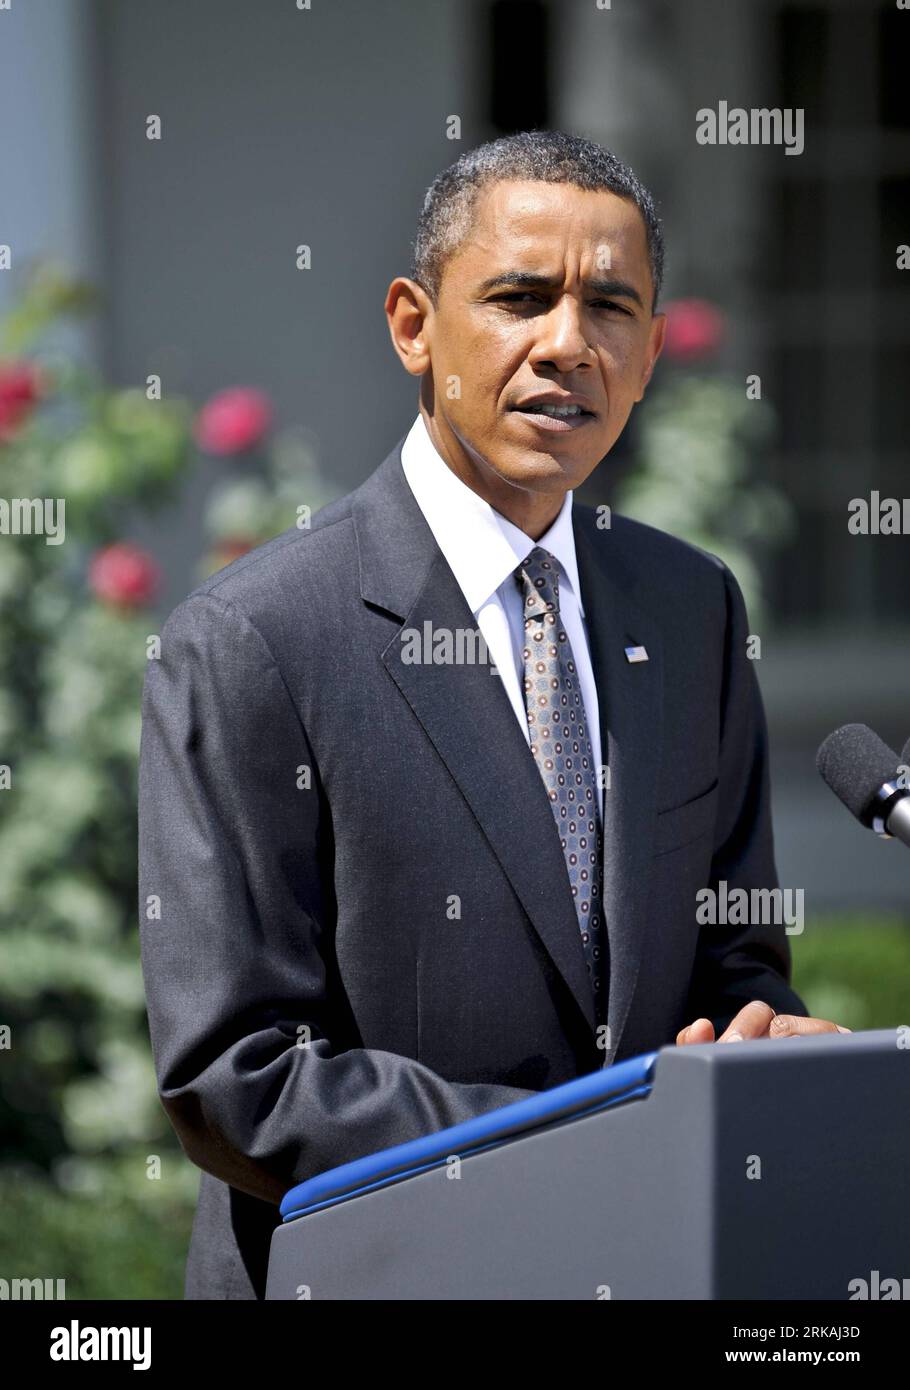 Bildnummer: 54367256 Datum: 30.08.2010 Copyright: Imago/Xinhua (100830) -- WASHINGTON D.C., 30 de agosto de 2010 (Xinhua) -- El presidente de los Estados Unidos, Barack Obama, hace una declaración en el Jardín de las Rosas de la Casa Blanca en Washington D.C., capital de los Estados Unidos, el 30 de agosto de 2010. Obama dijo el lunes que su equipo económico había discutido medidas adicionales para impulsar la economía, y nuevamente instó al Congreso a aprobar un proyecto de ley que reduciría más impuestos y pondría a disposición más préstamos a las pequeñas empresas. (Xinhua/Zhang Jun) (3)EEUU-WASHINGTON-OBAMA-ECONOMÍA PUBLICATIONxNOTxINxCHN POLITIK People Porträt Prem Foto de stock